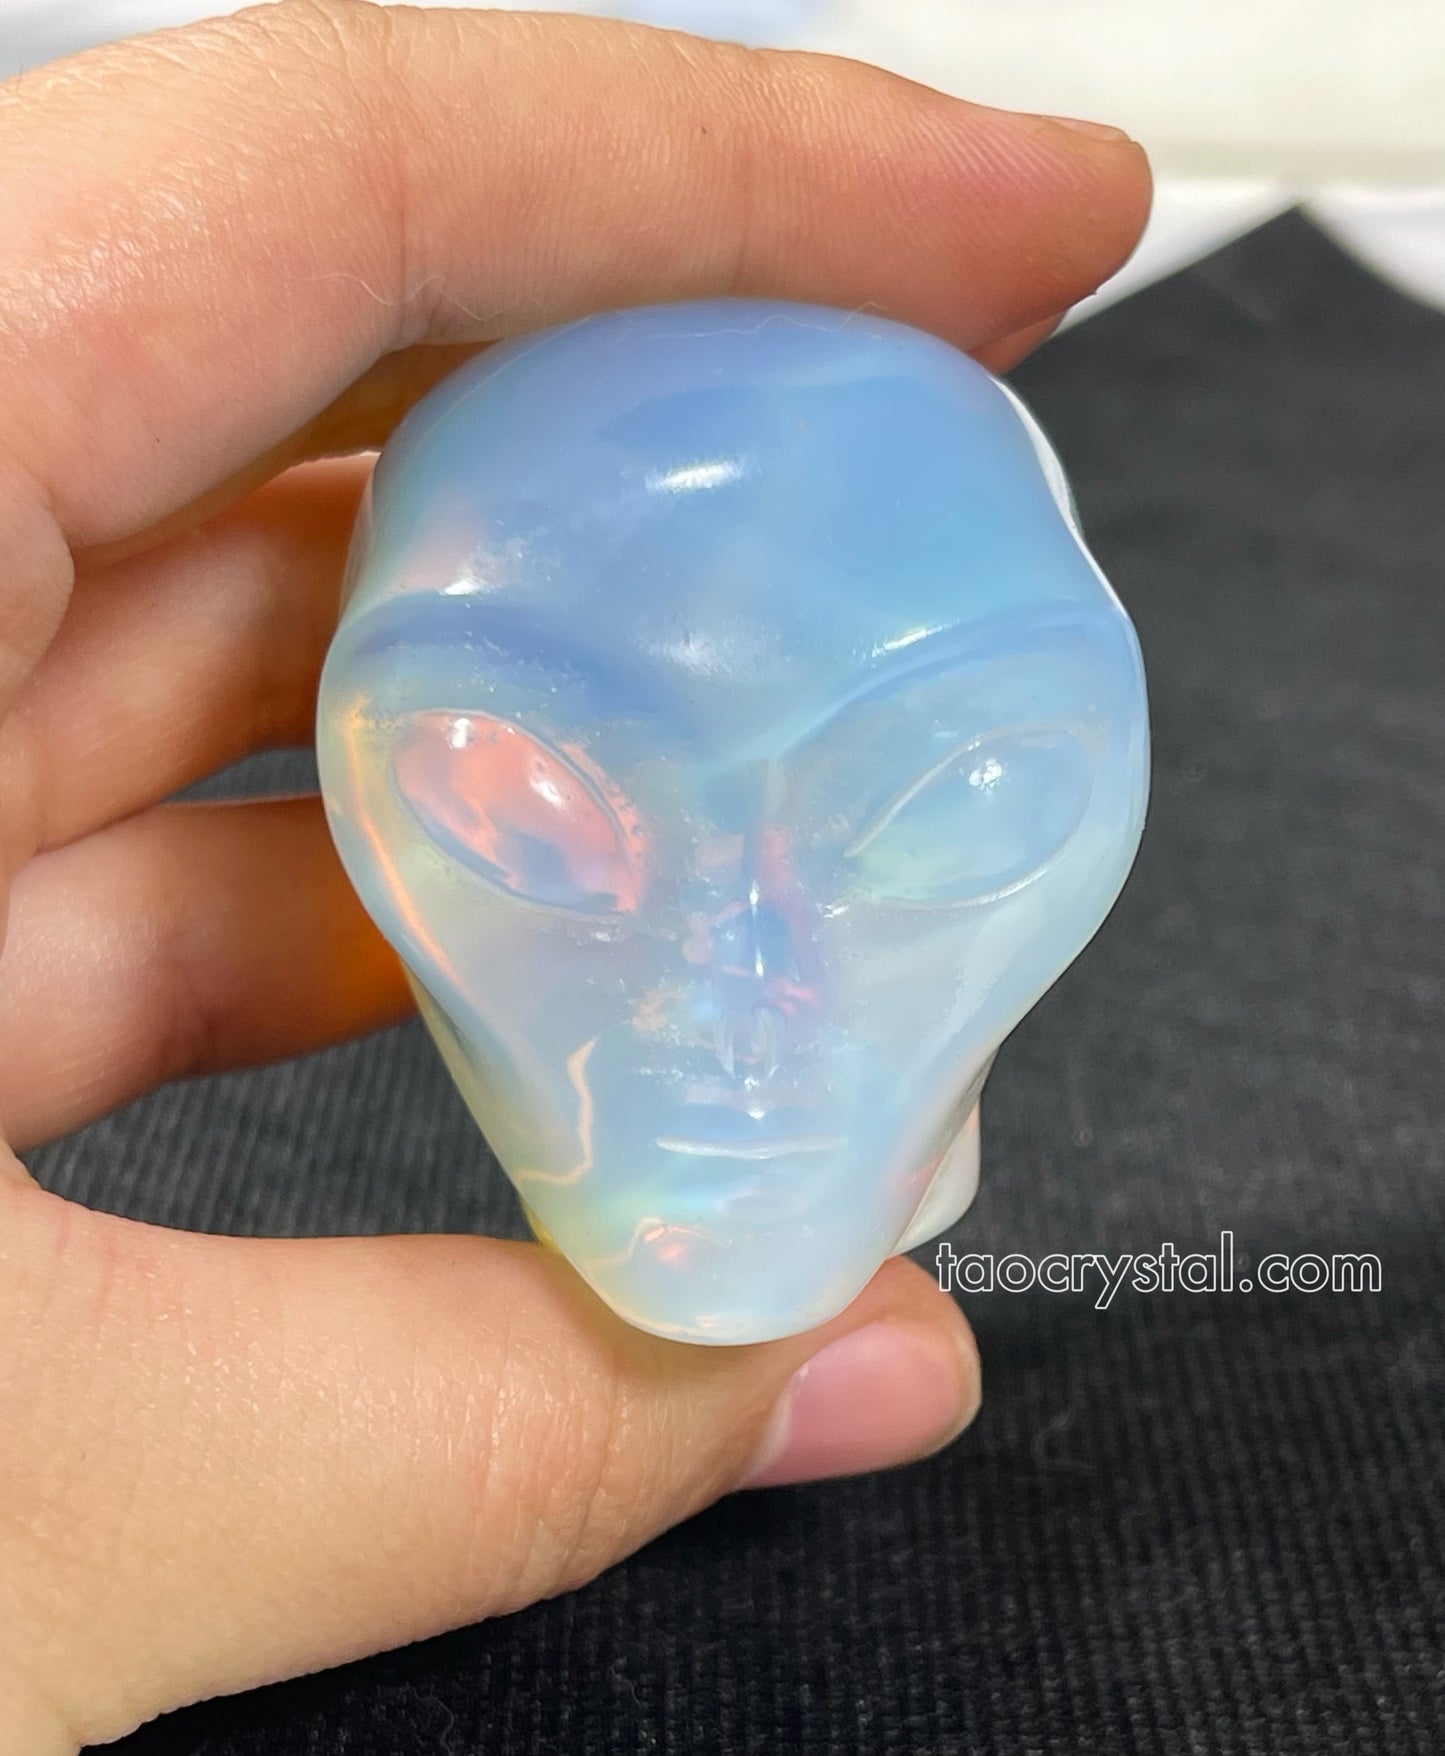 Alien Head Crystal Carving